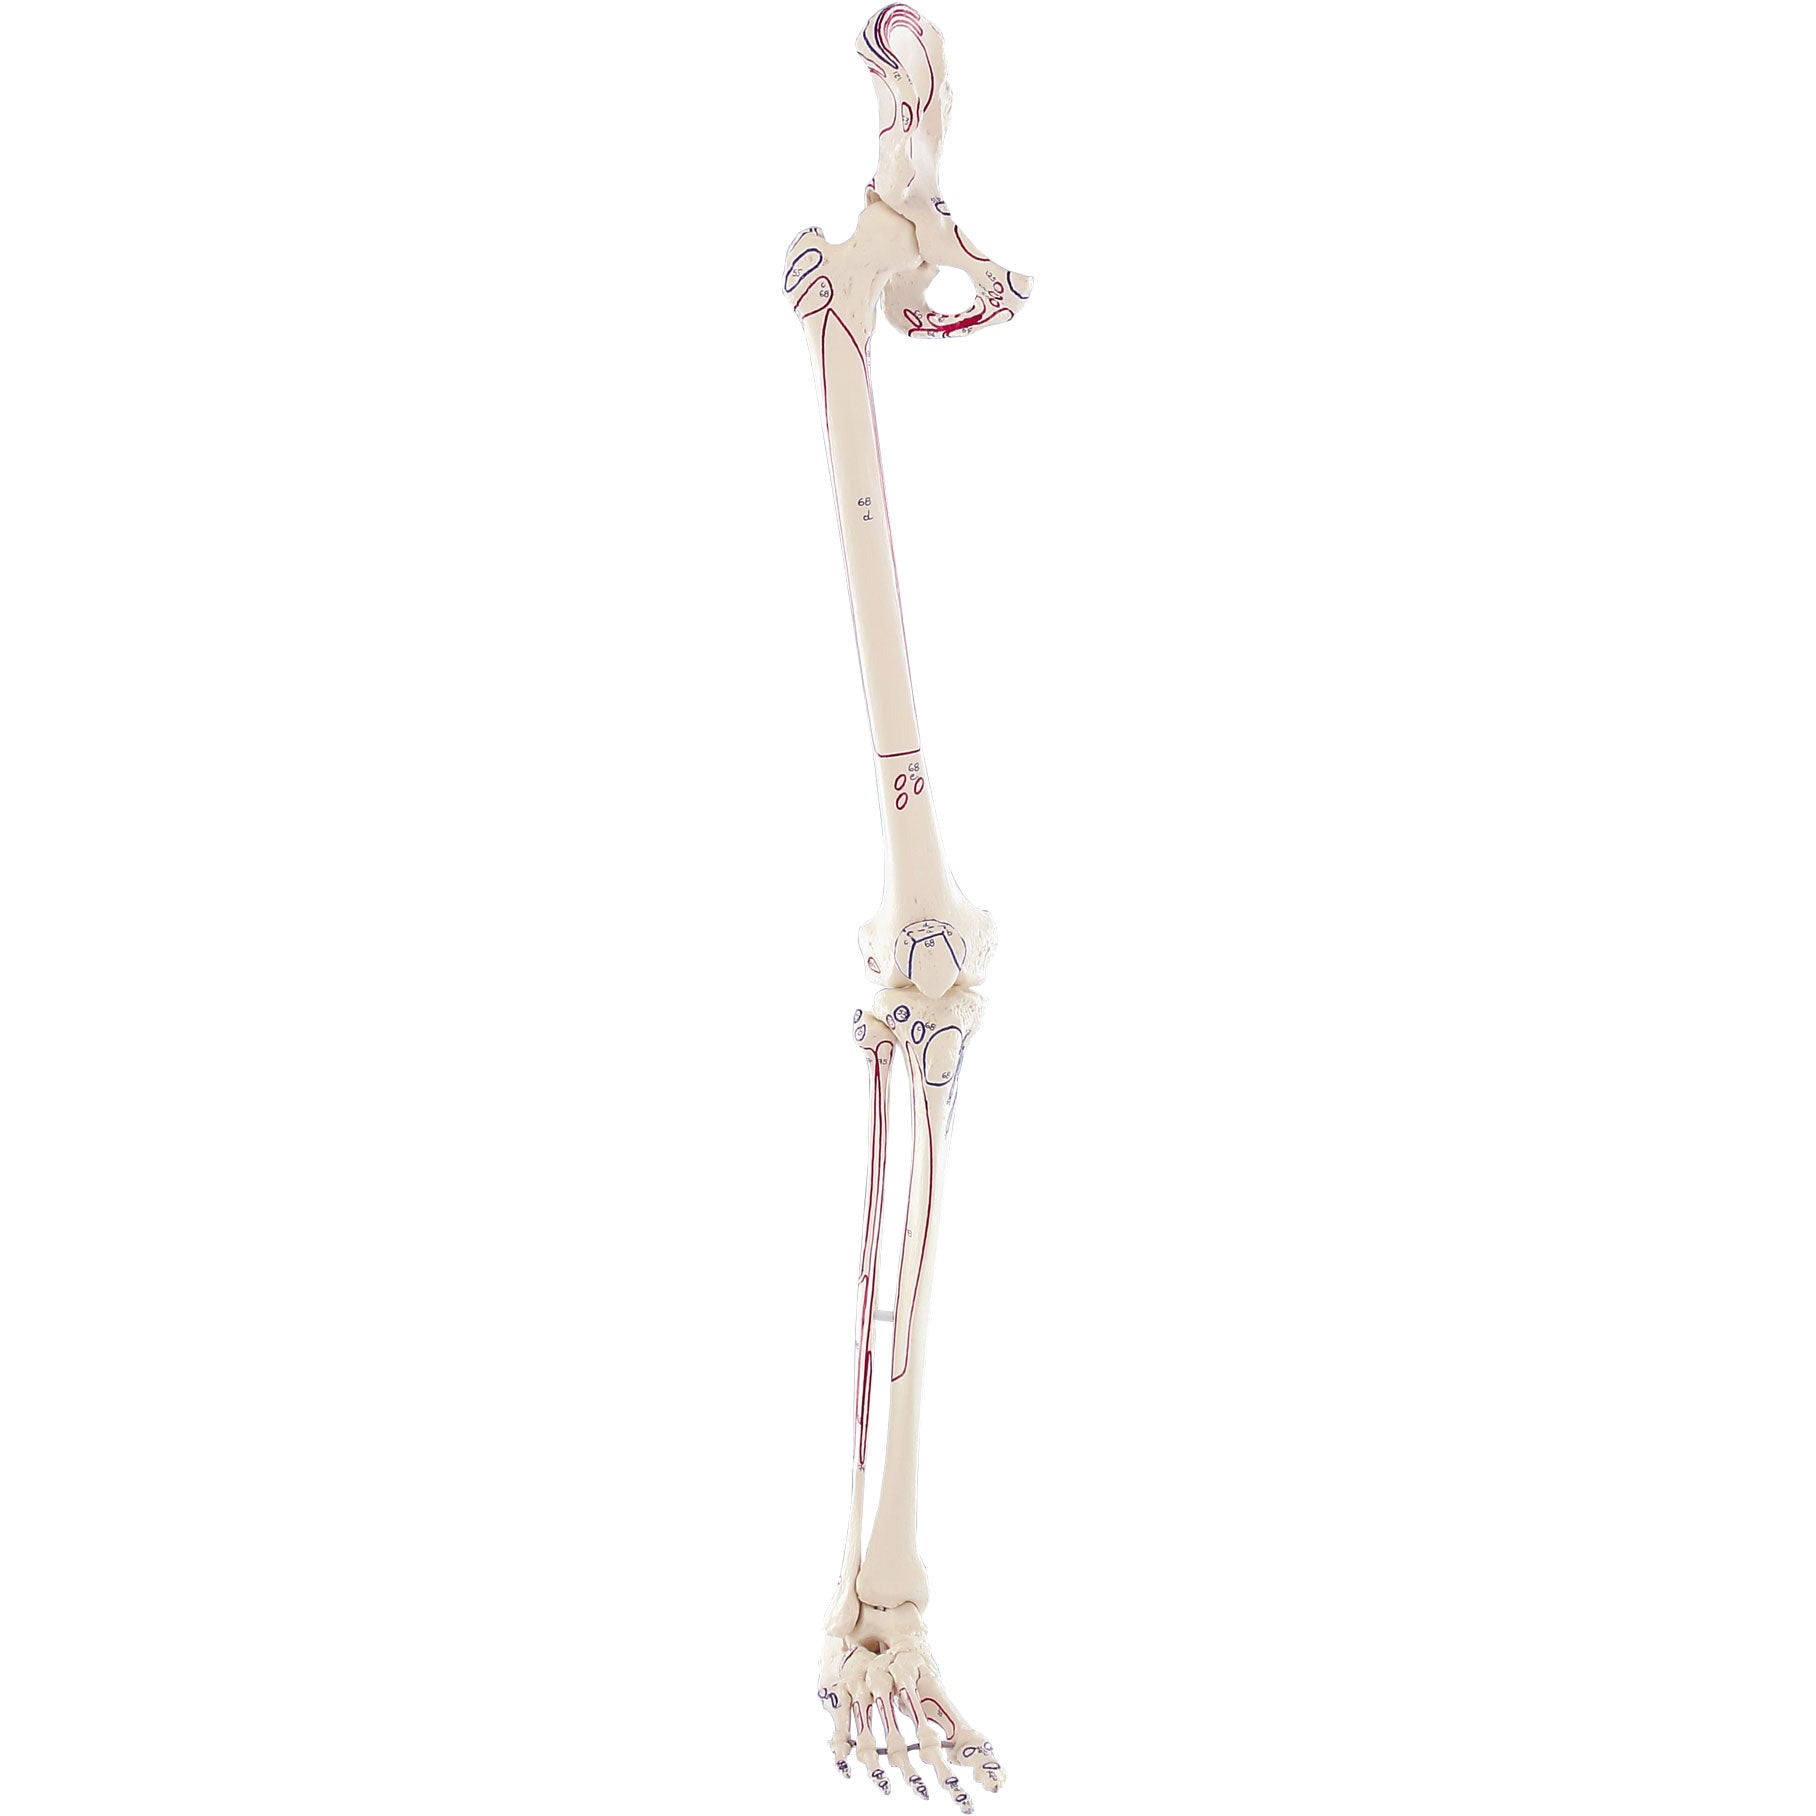 1 скелет голени. Скелет руки. Скелет ноги. Скелет руки человека. Скелет рук и ног.